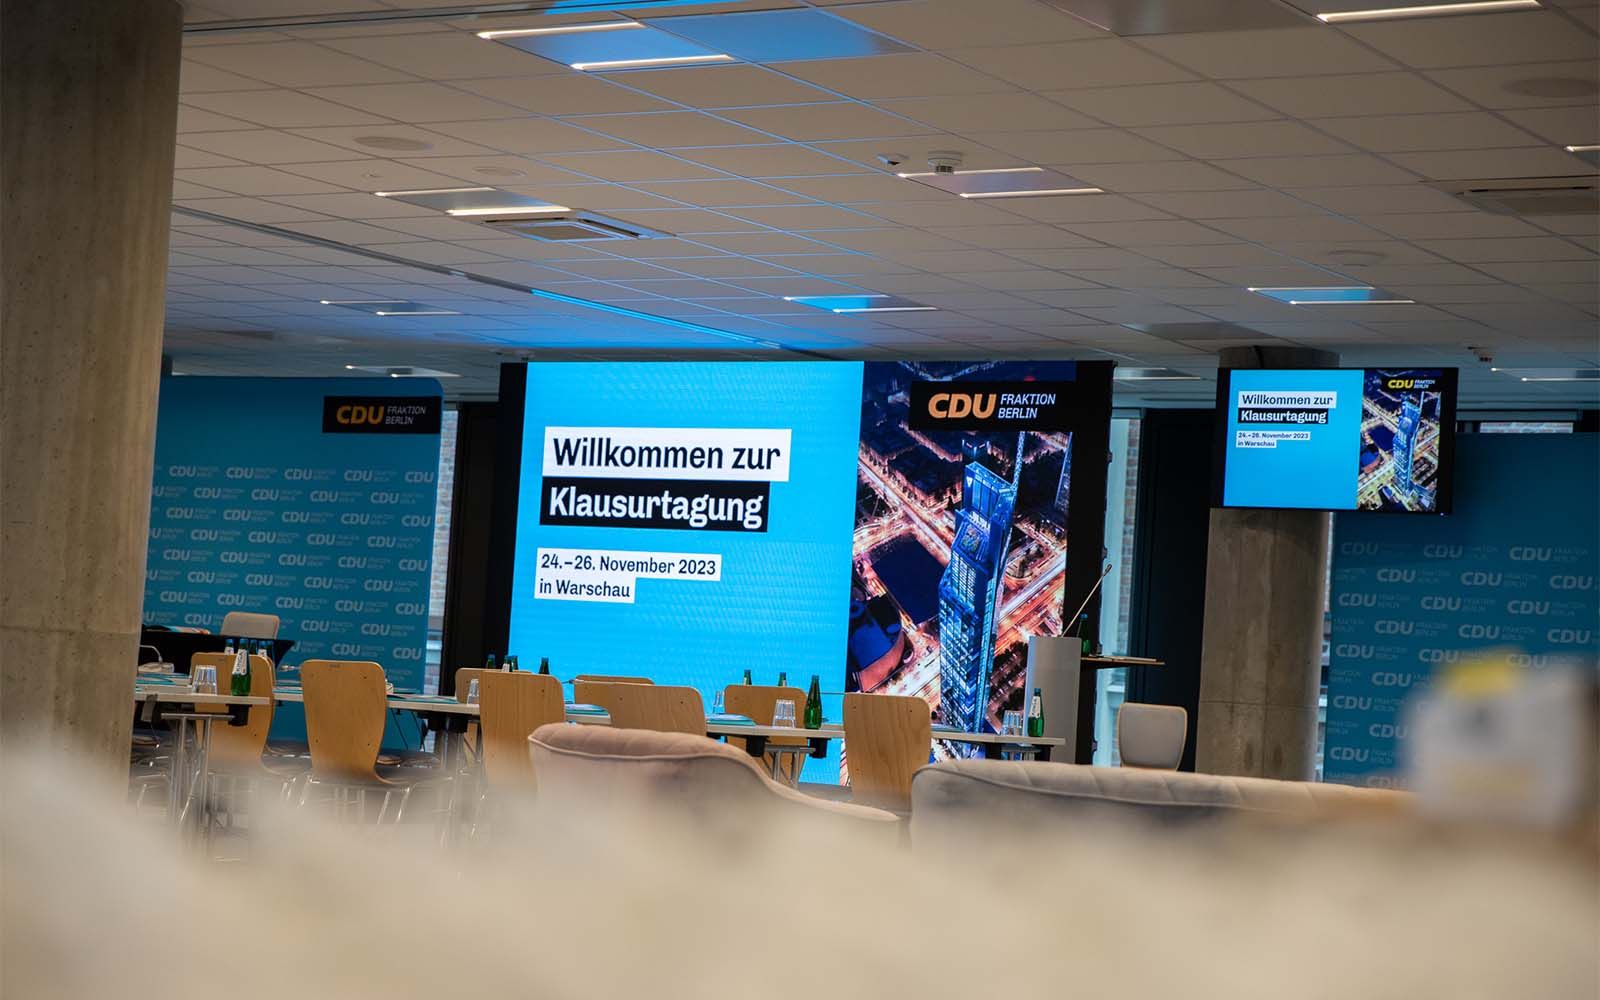 Bild vom Konferenzsaal der CDU Fraktion Berlin in Warschau